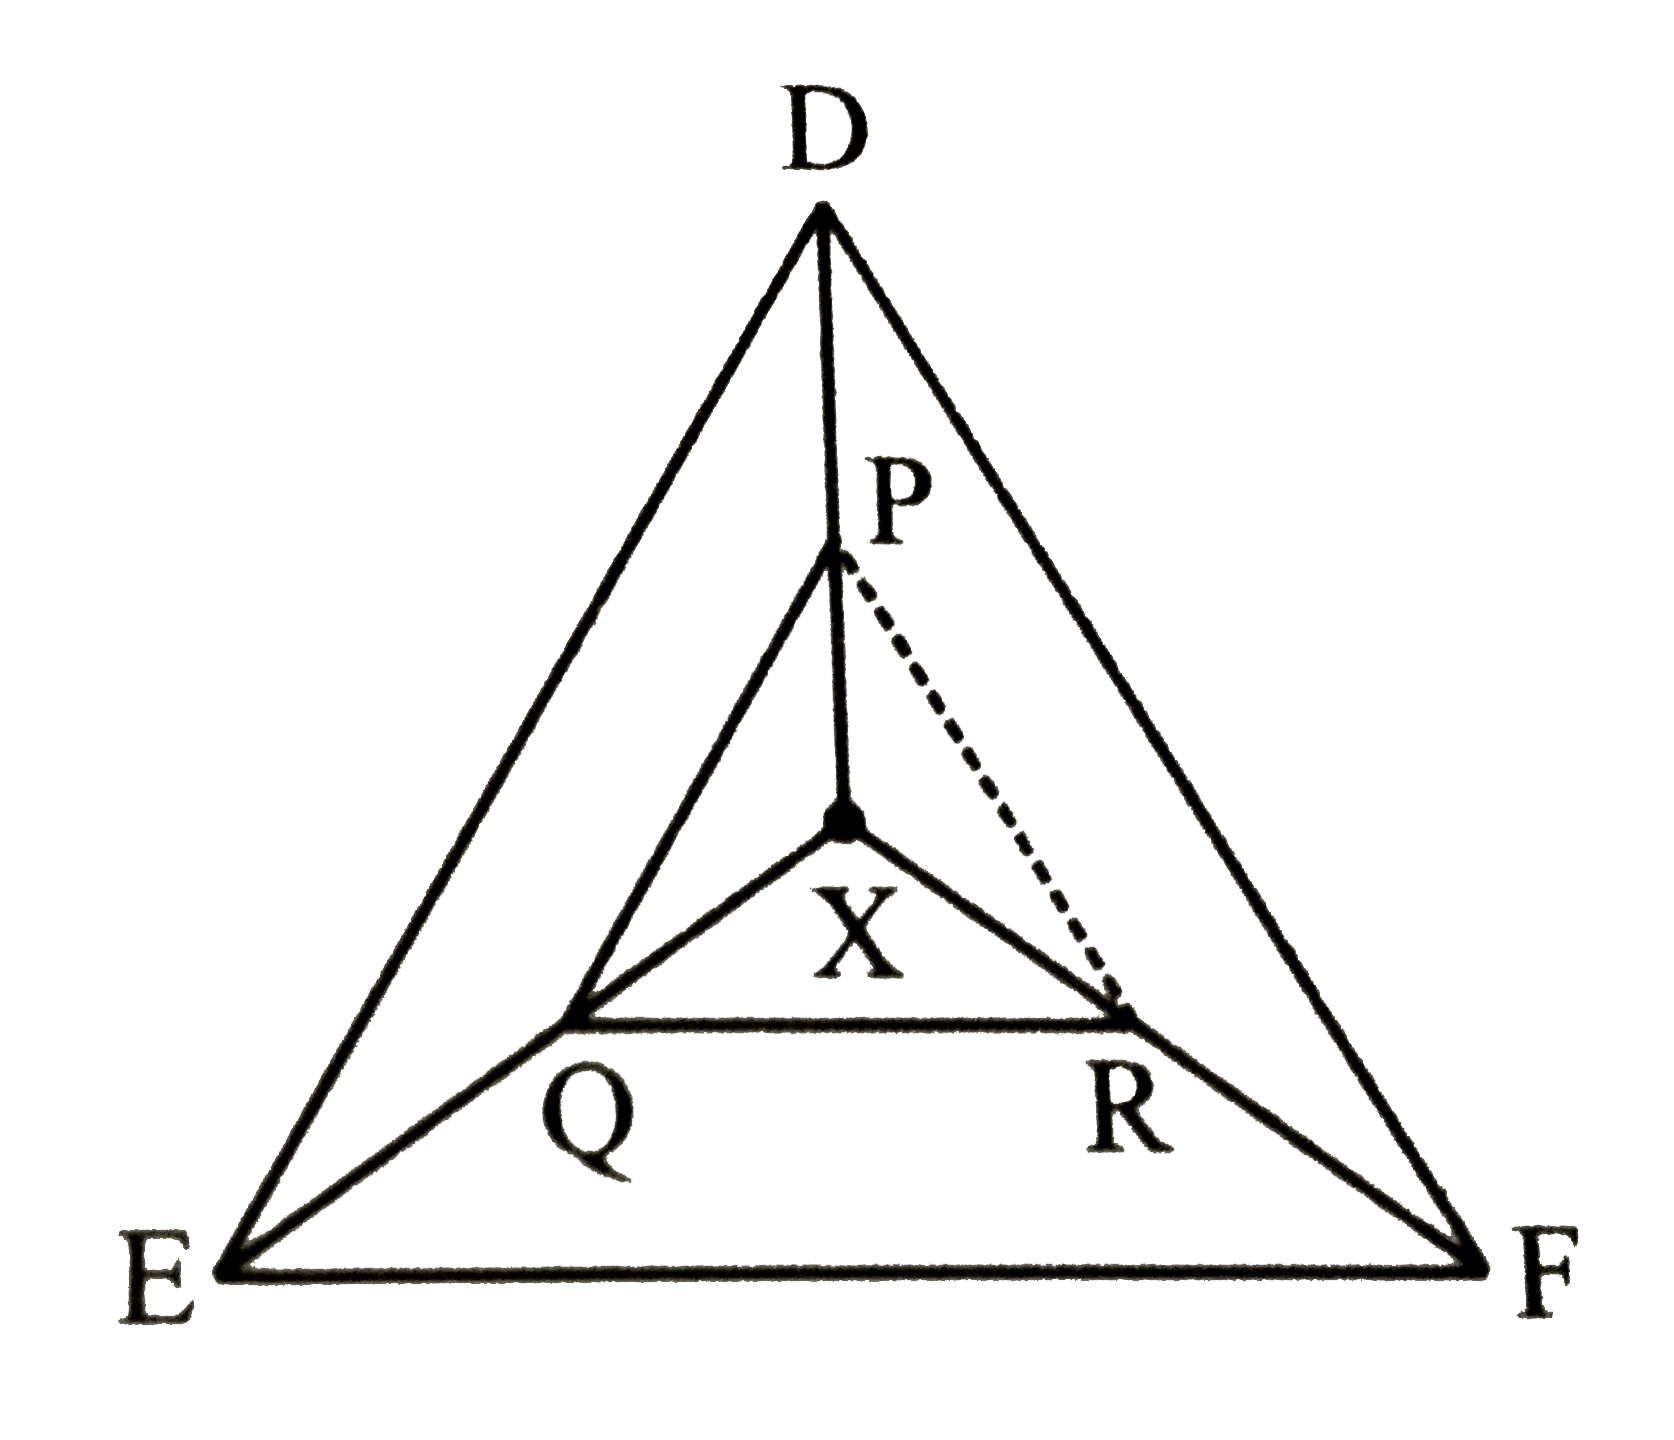 triangleDEF में कोई बिंदु X है जिसे शीर्ष D,E तथा F से मिलाया गया है । DX पर कोई P लेकर, PQ।।DE खींचा गया है, जो XE से Q पर मिलती है तथा QR।।EF जो XF से R  मिलती है । सिद्ध कीजिए कि PR।।DF